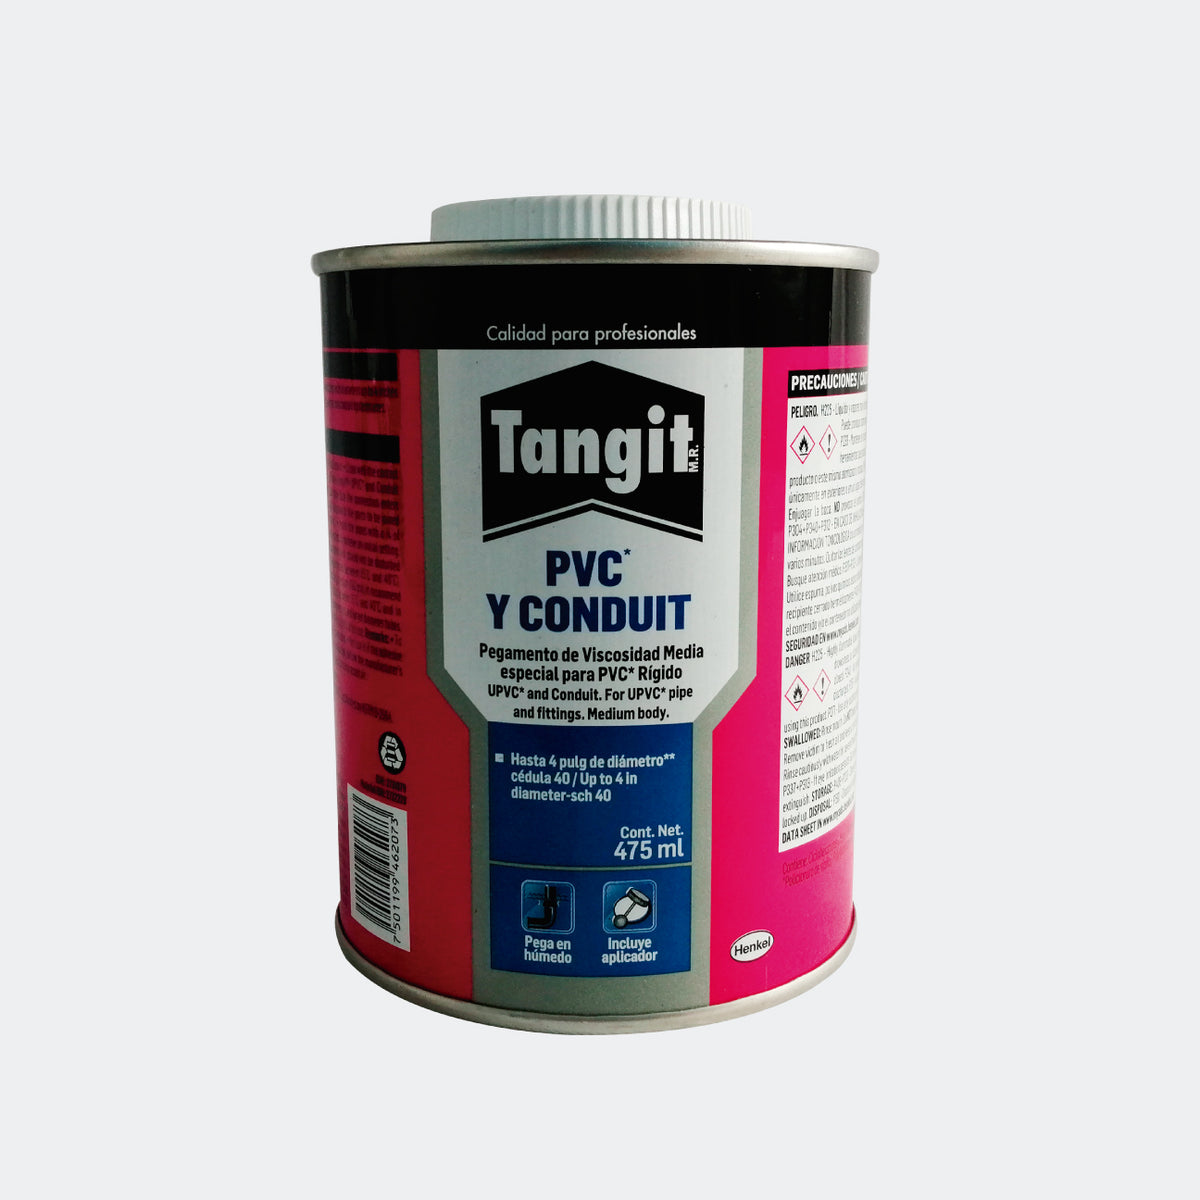 PEGAMENTO PVC TANGIT 1/8 GALON (475ML) - ATEC Suministros